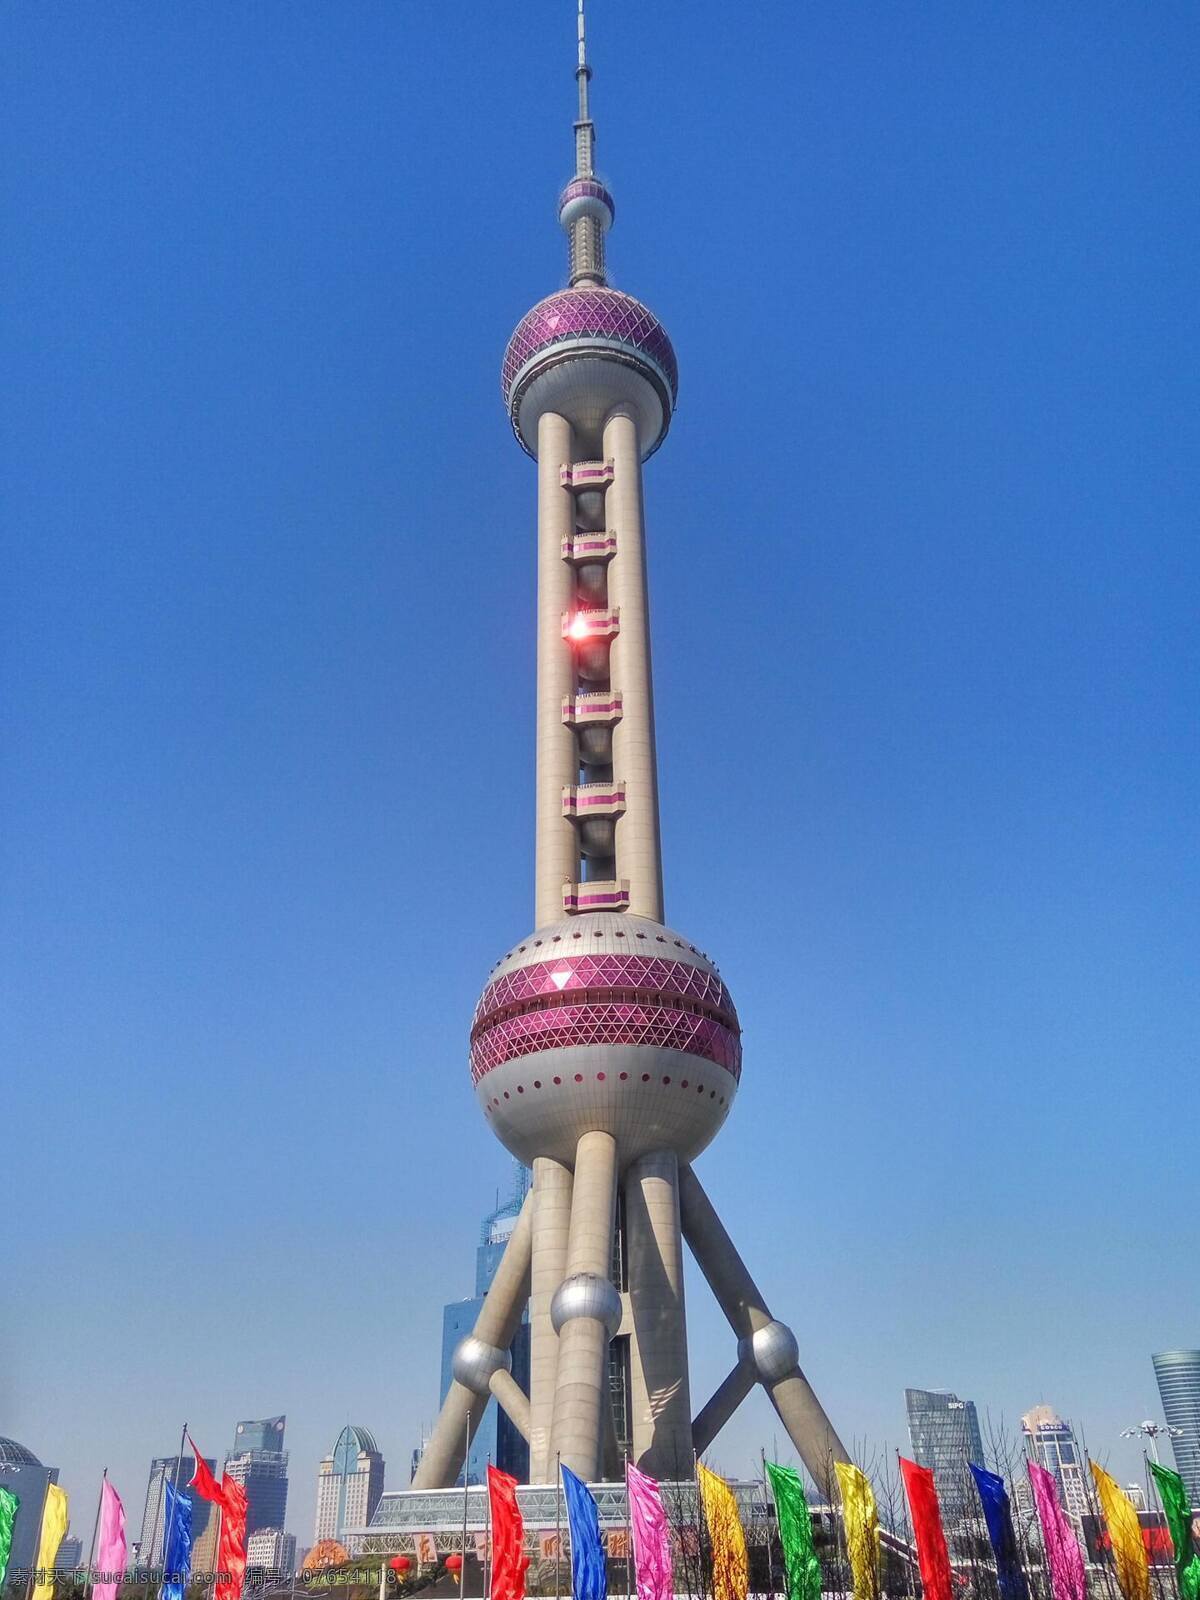 上海东方明珠 上海 东方明珠塔 上海著名建筑 旅游摄影 国内旅游